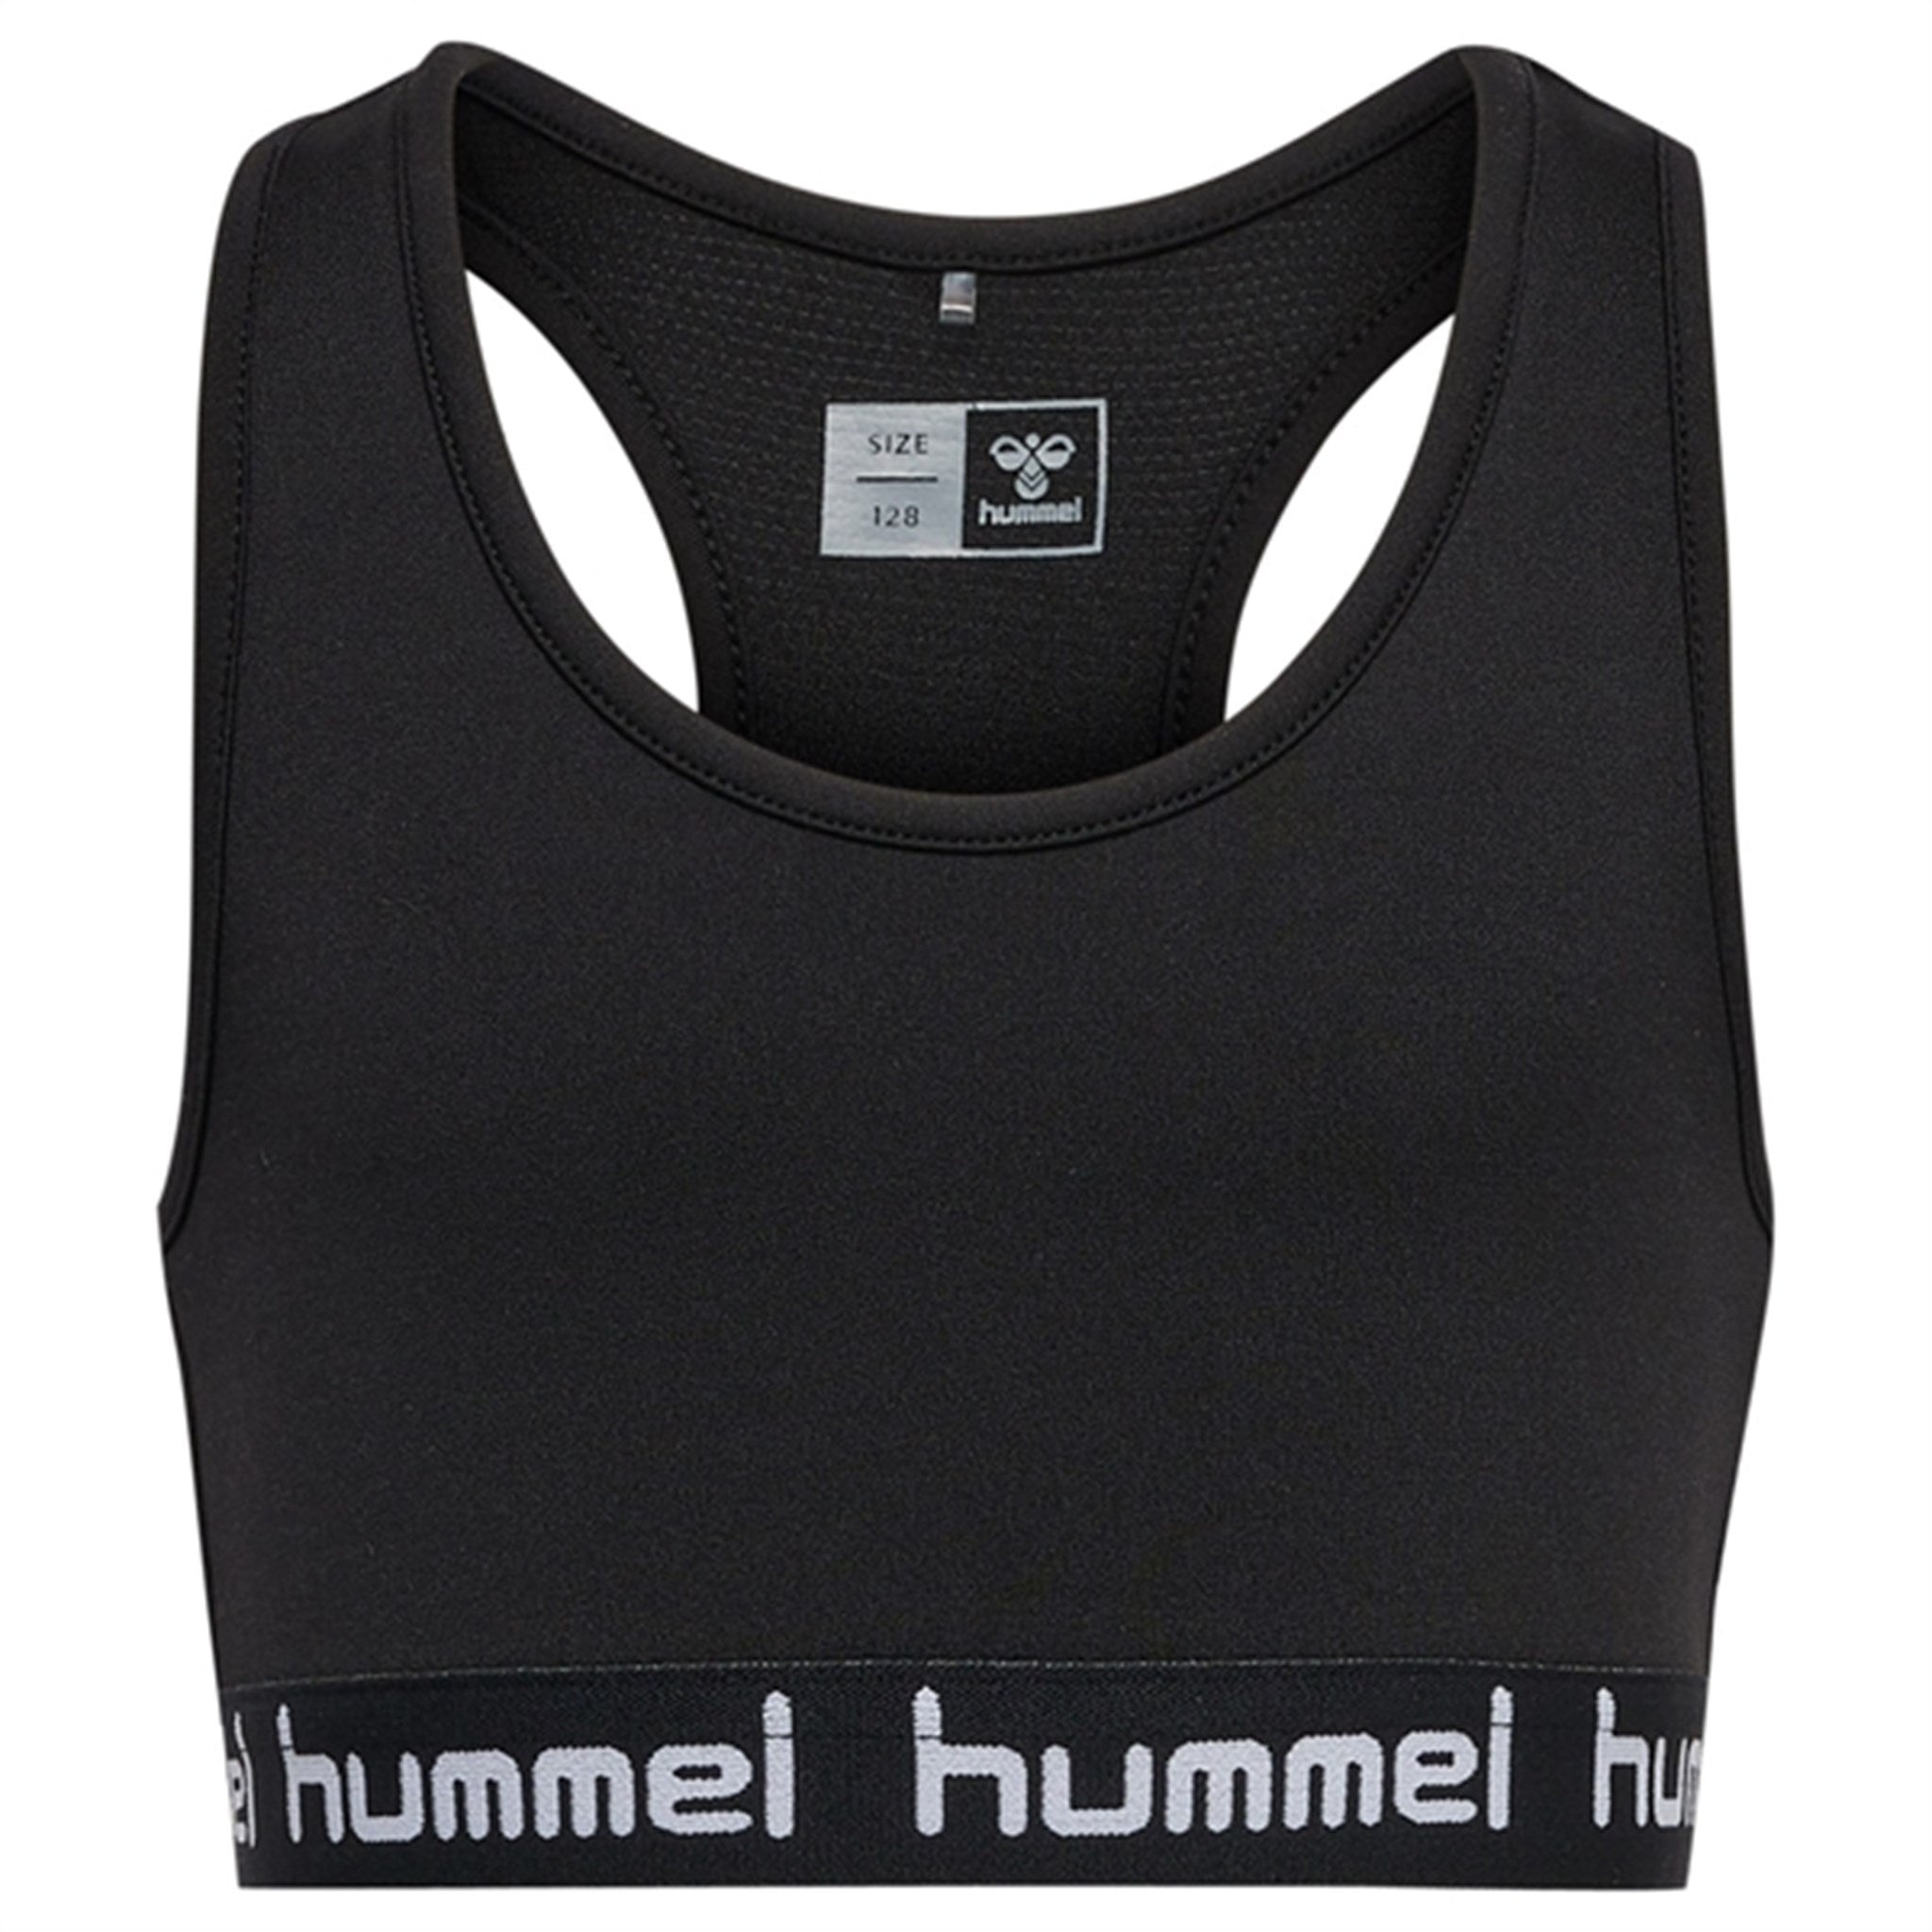 Hummel Black Mimmi Sports Top